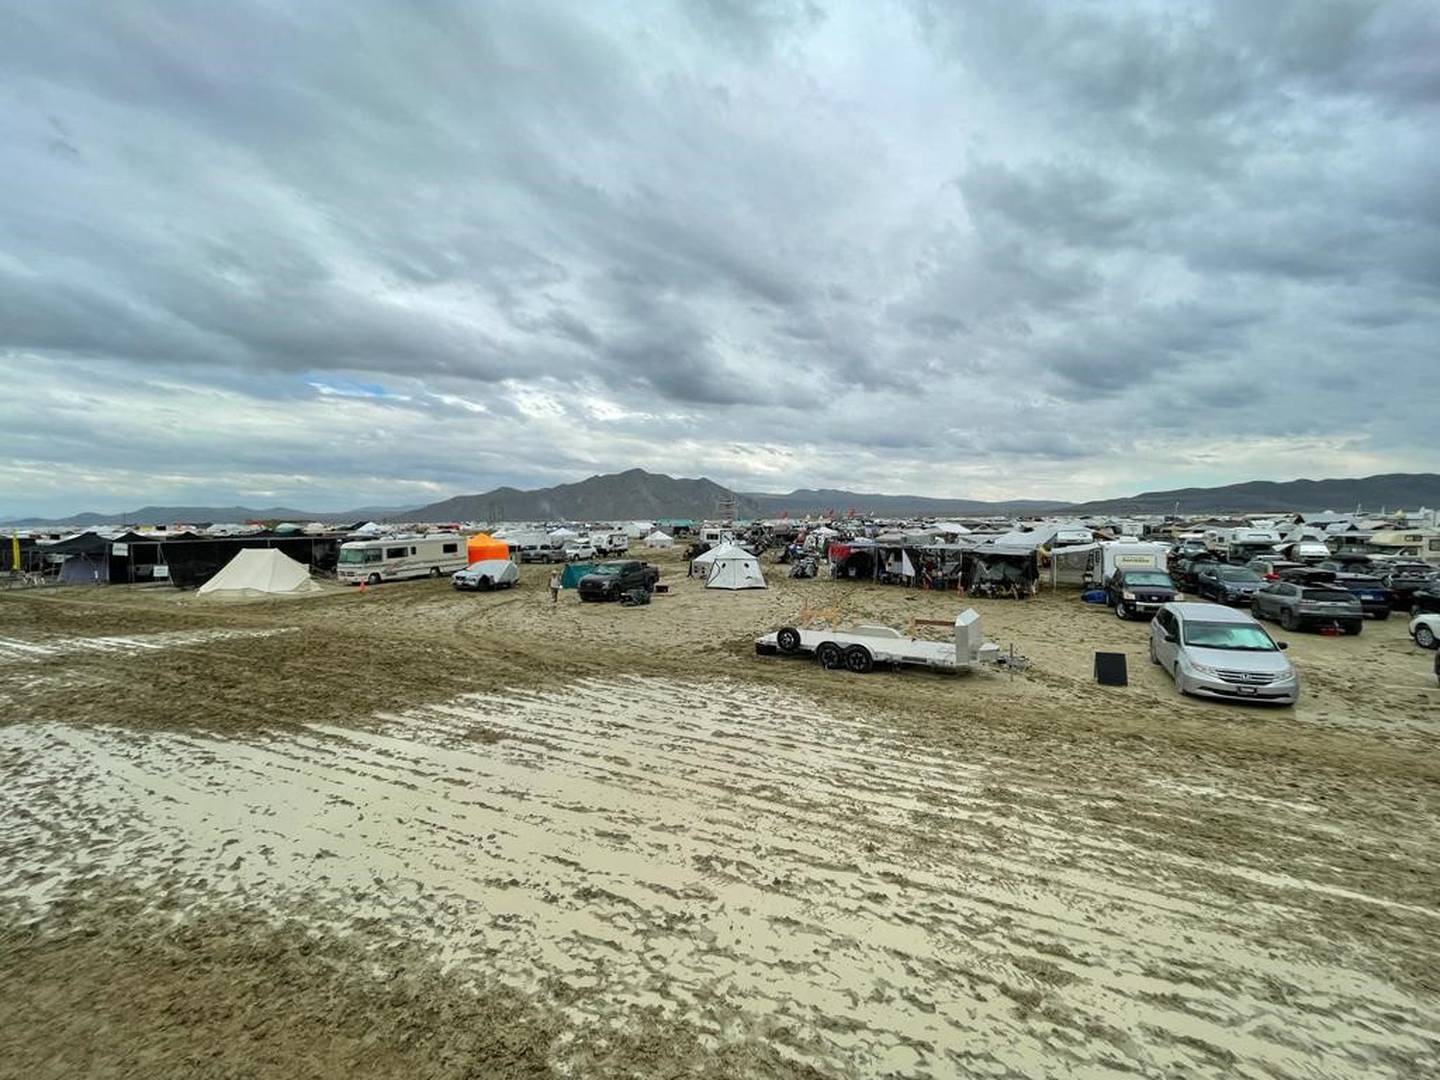 Las fuertes lluvias causaron inundaciones en la zona del festival 'Burning Man' en Nevada, lo que llevó al cierre de las puertas y del aeropuerto de entrada y salida de Black Rock City.